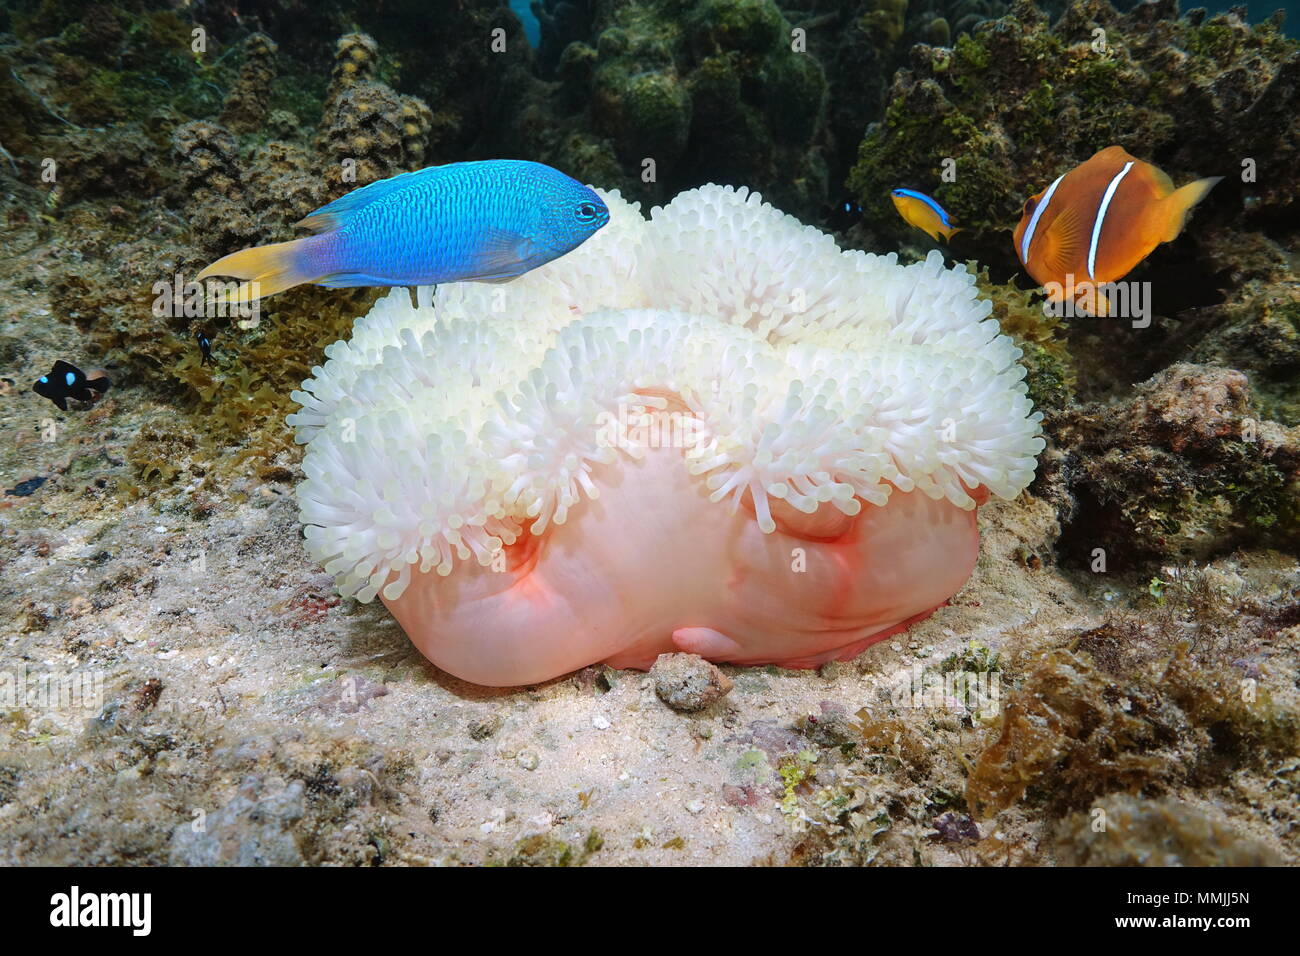 La vida marina, una magnifica anémona de mar, Heteractis magnifica, con coloridos peces tropicales, Océano Pacífico, Bora Bora, Polinesia Francesa Foto de stock